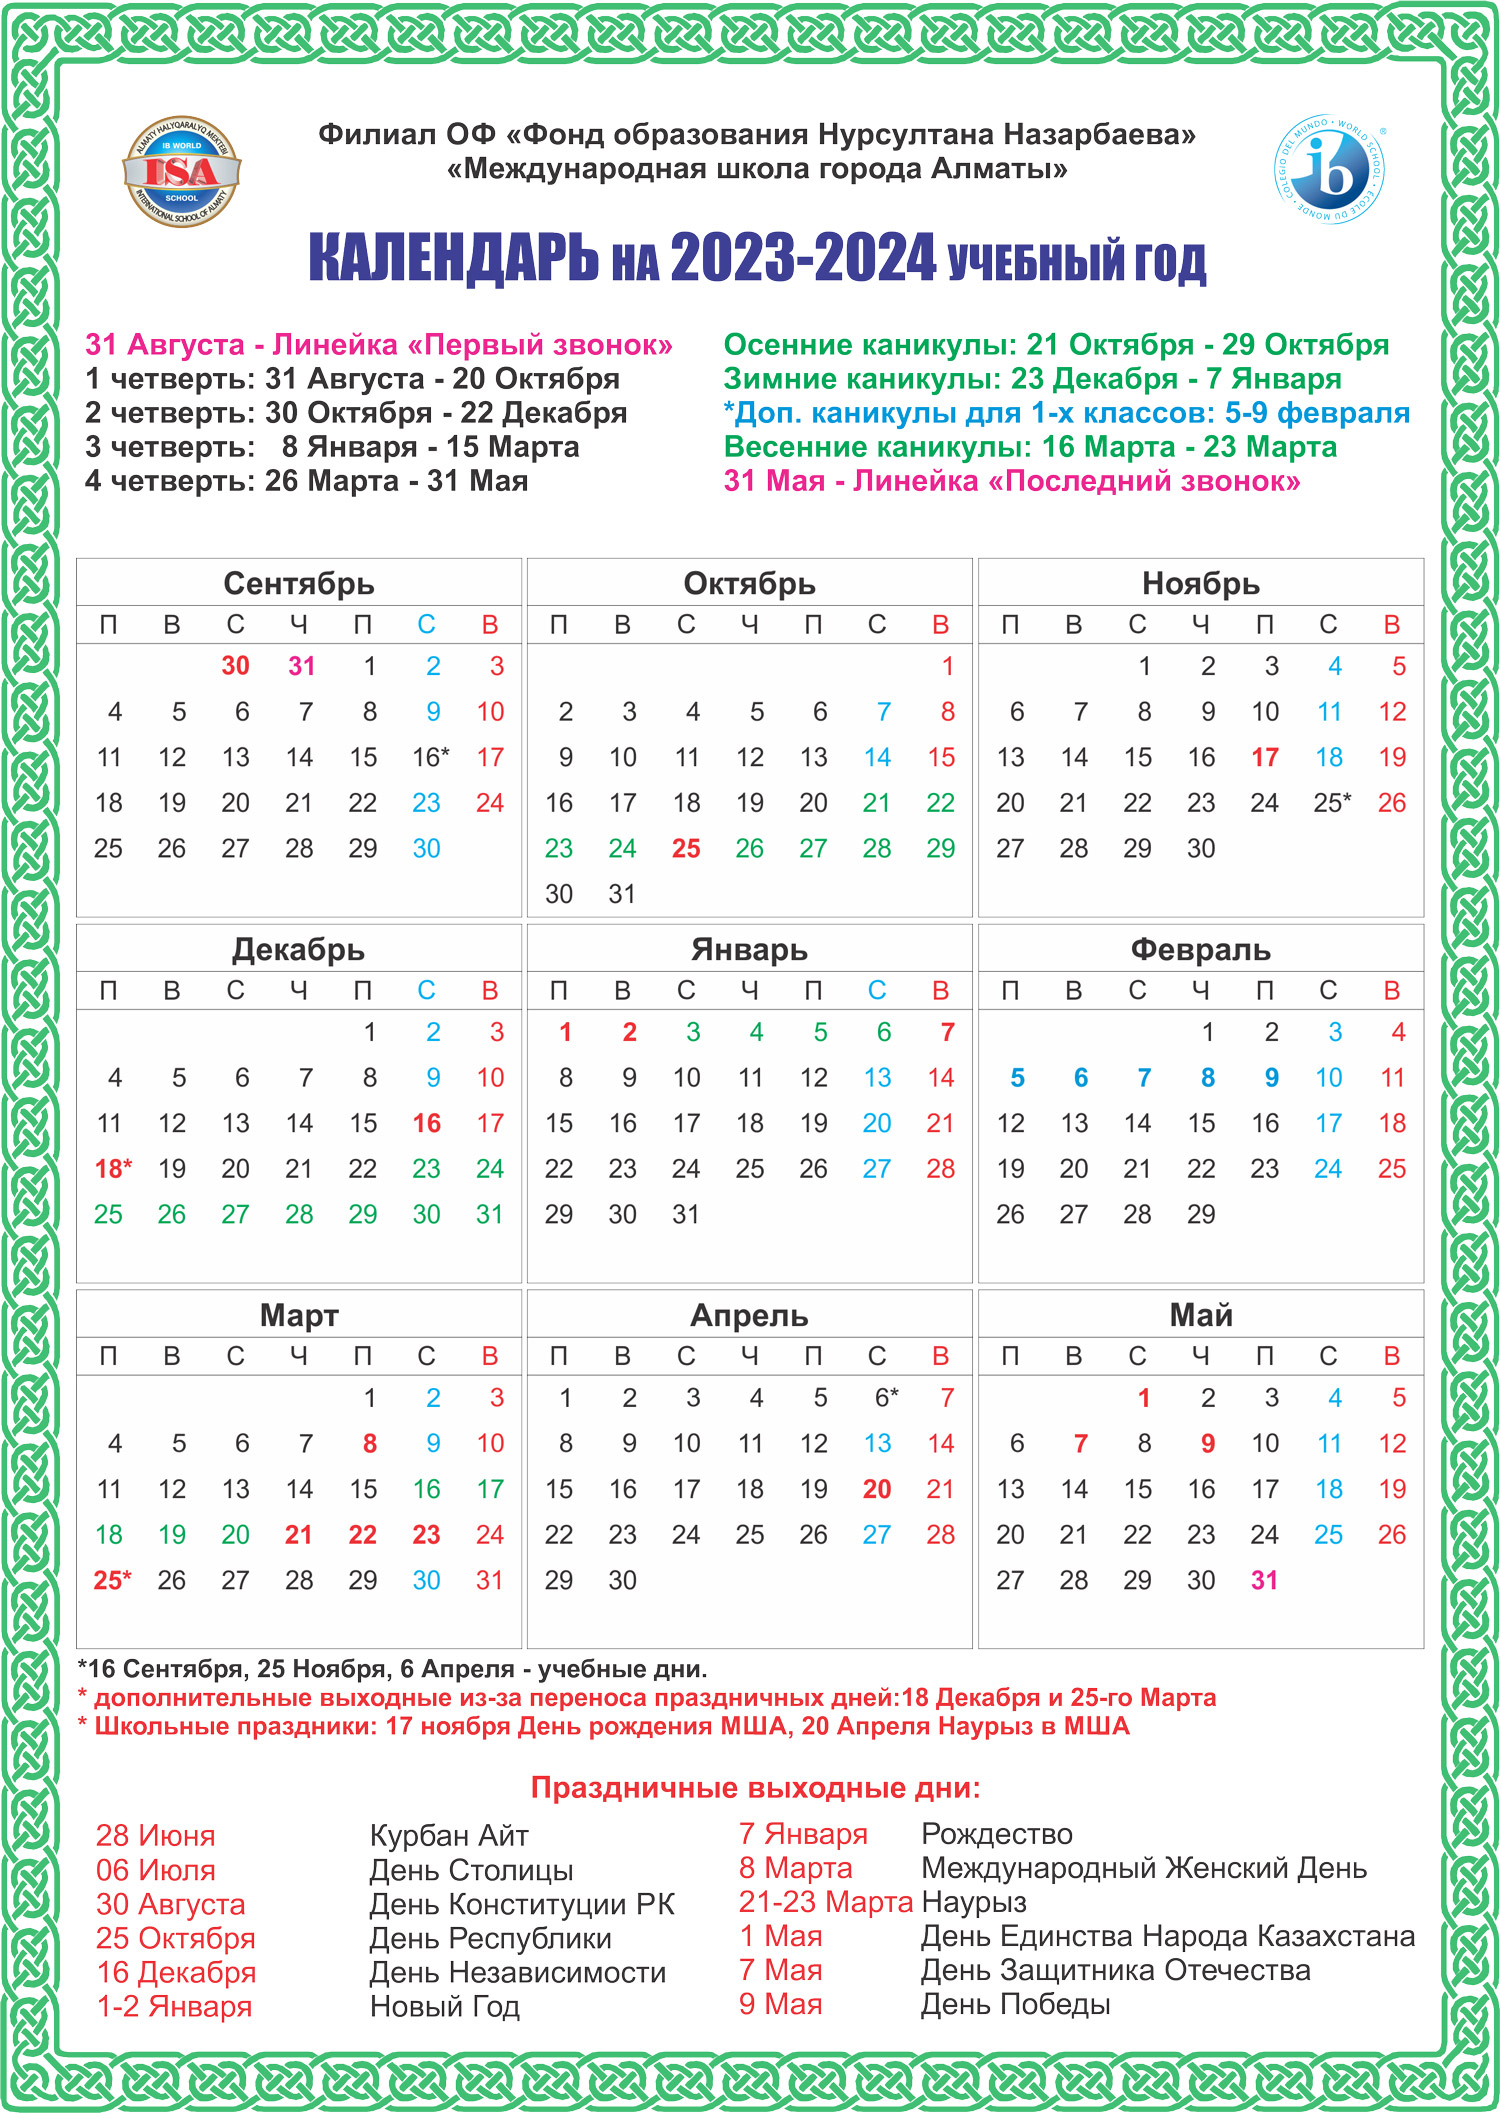 calendar 2023 2024 russian